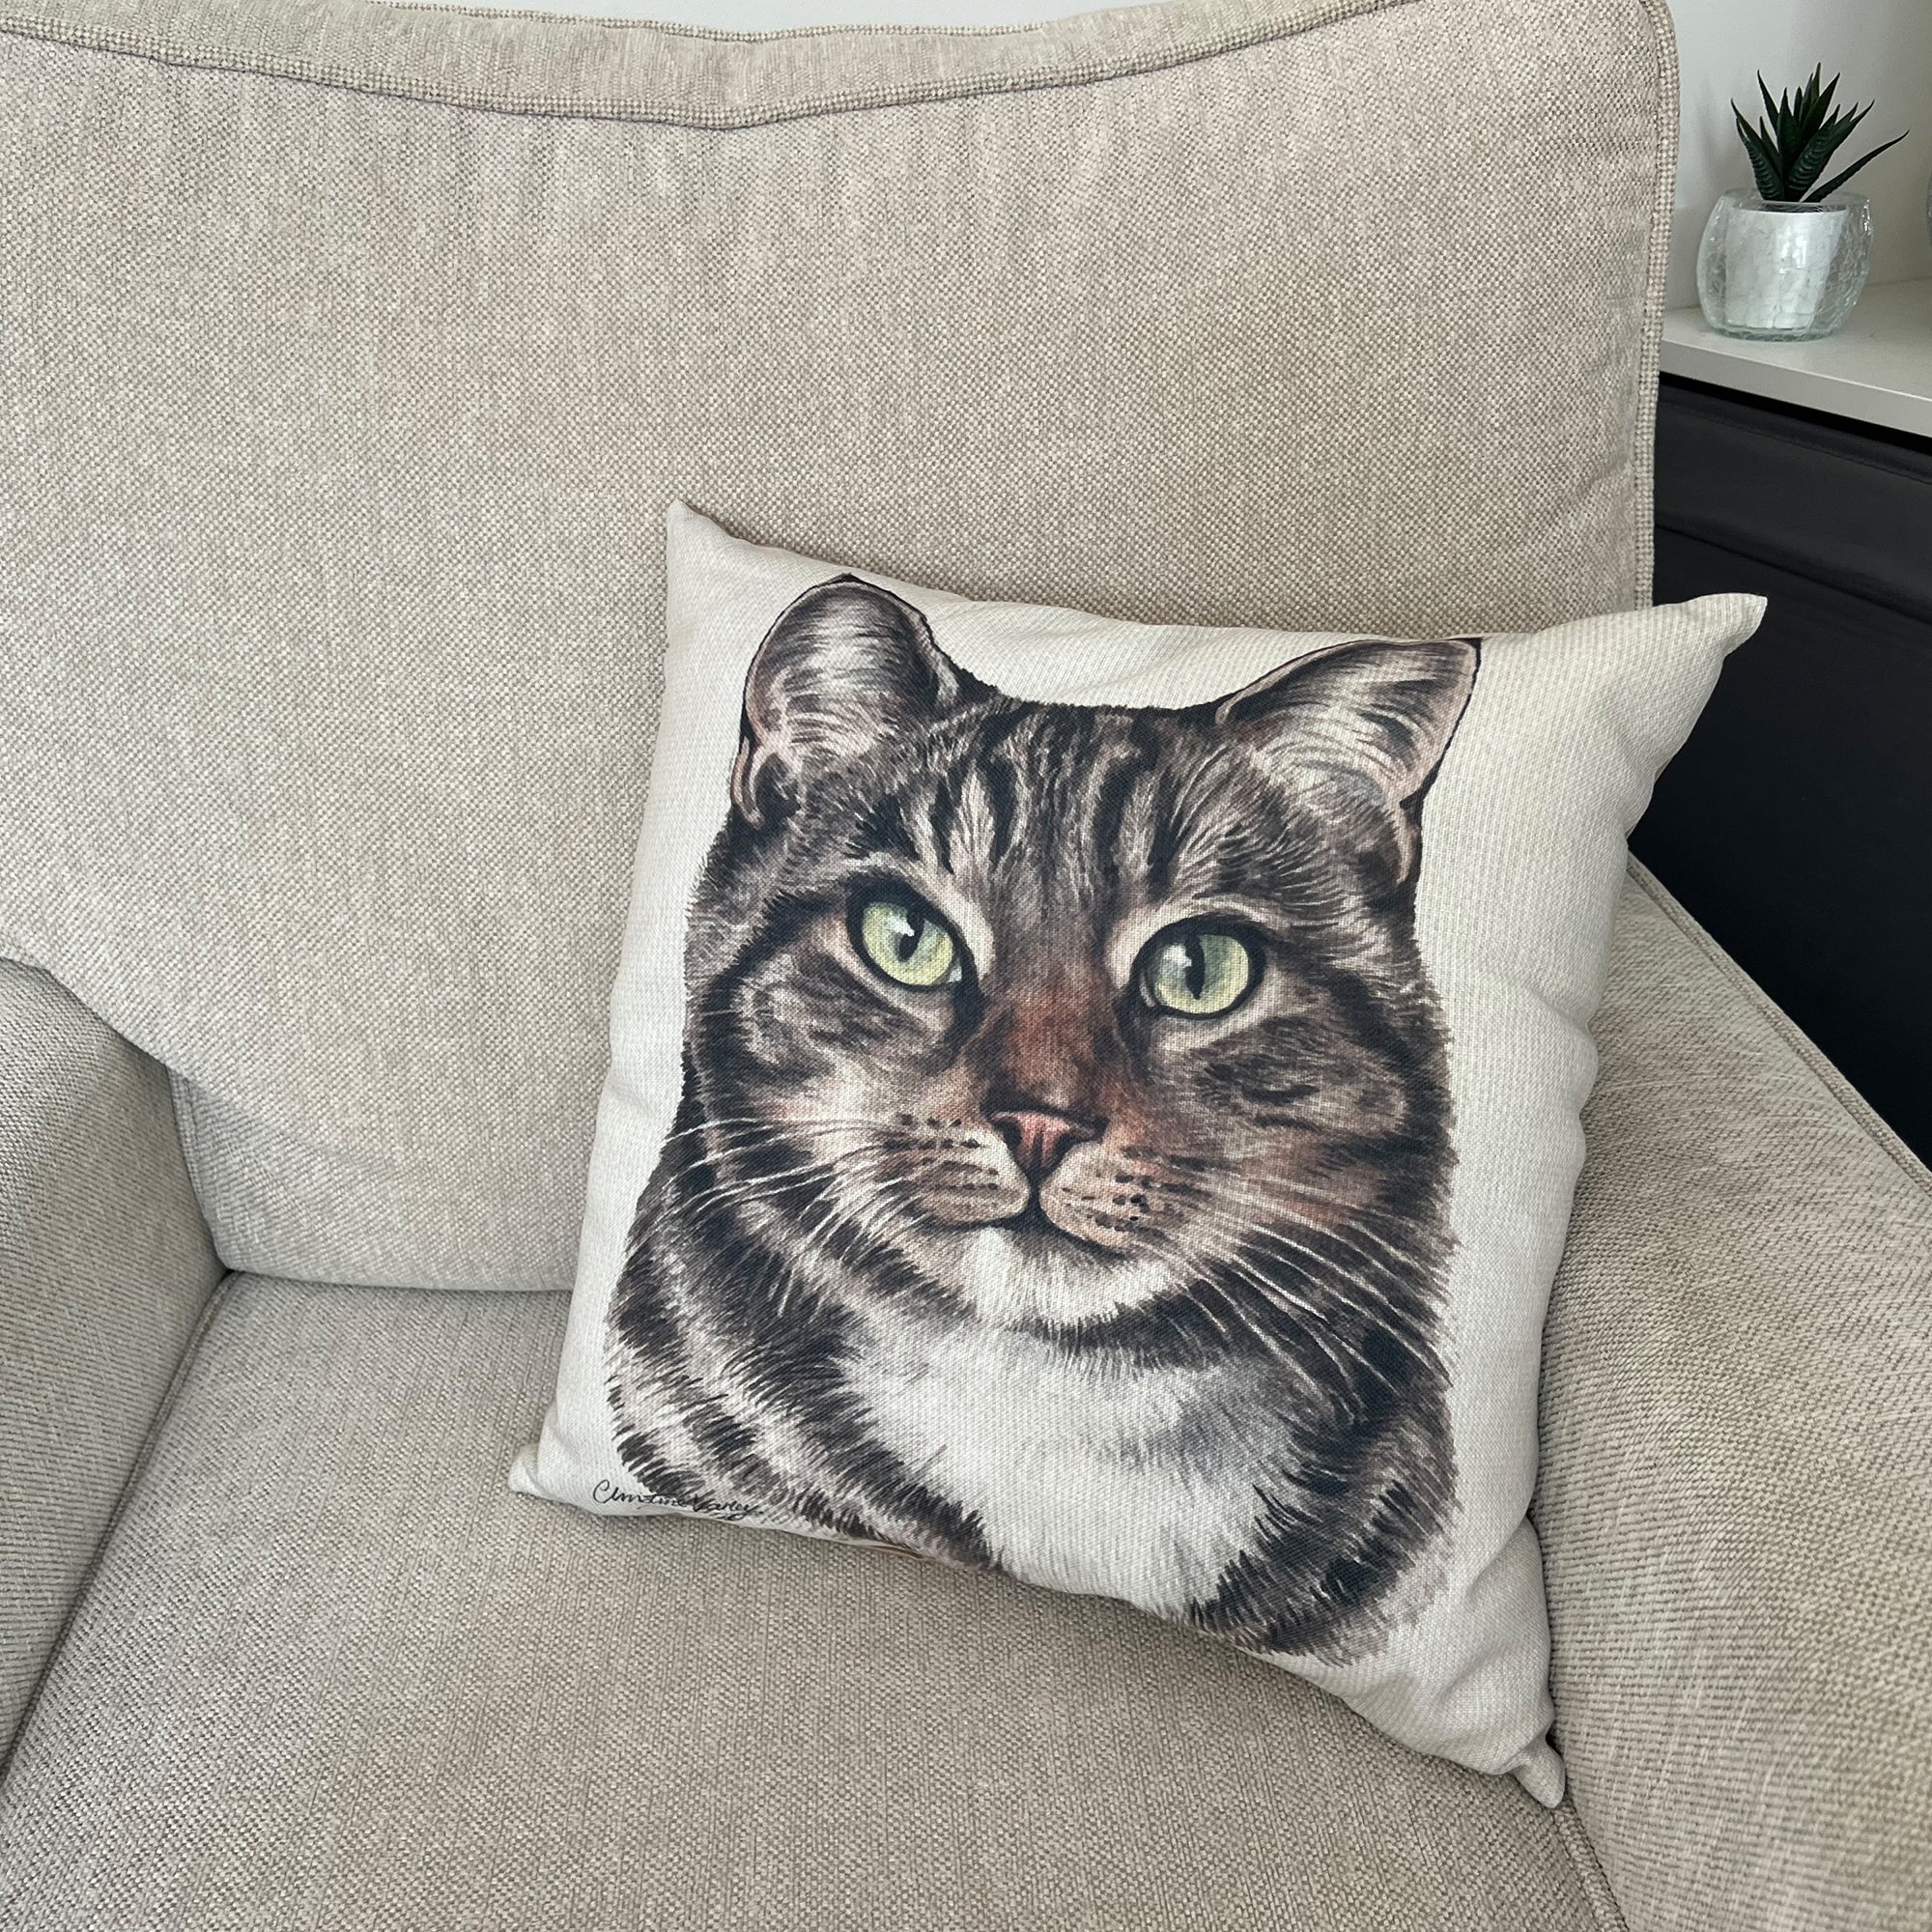 Christine Varley Tabby Cat Square Cushion